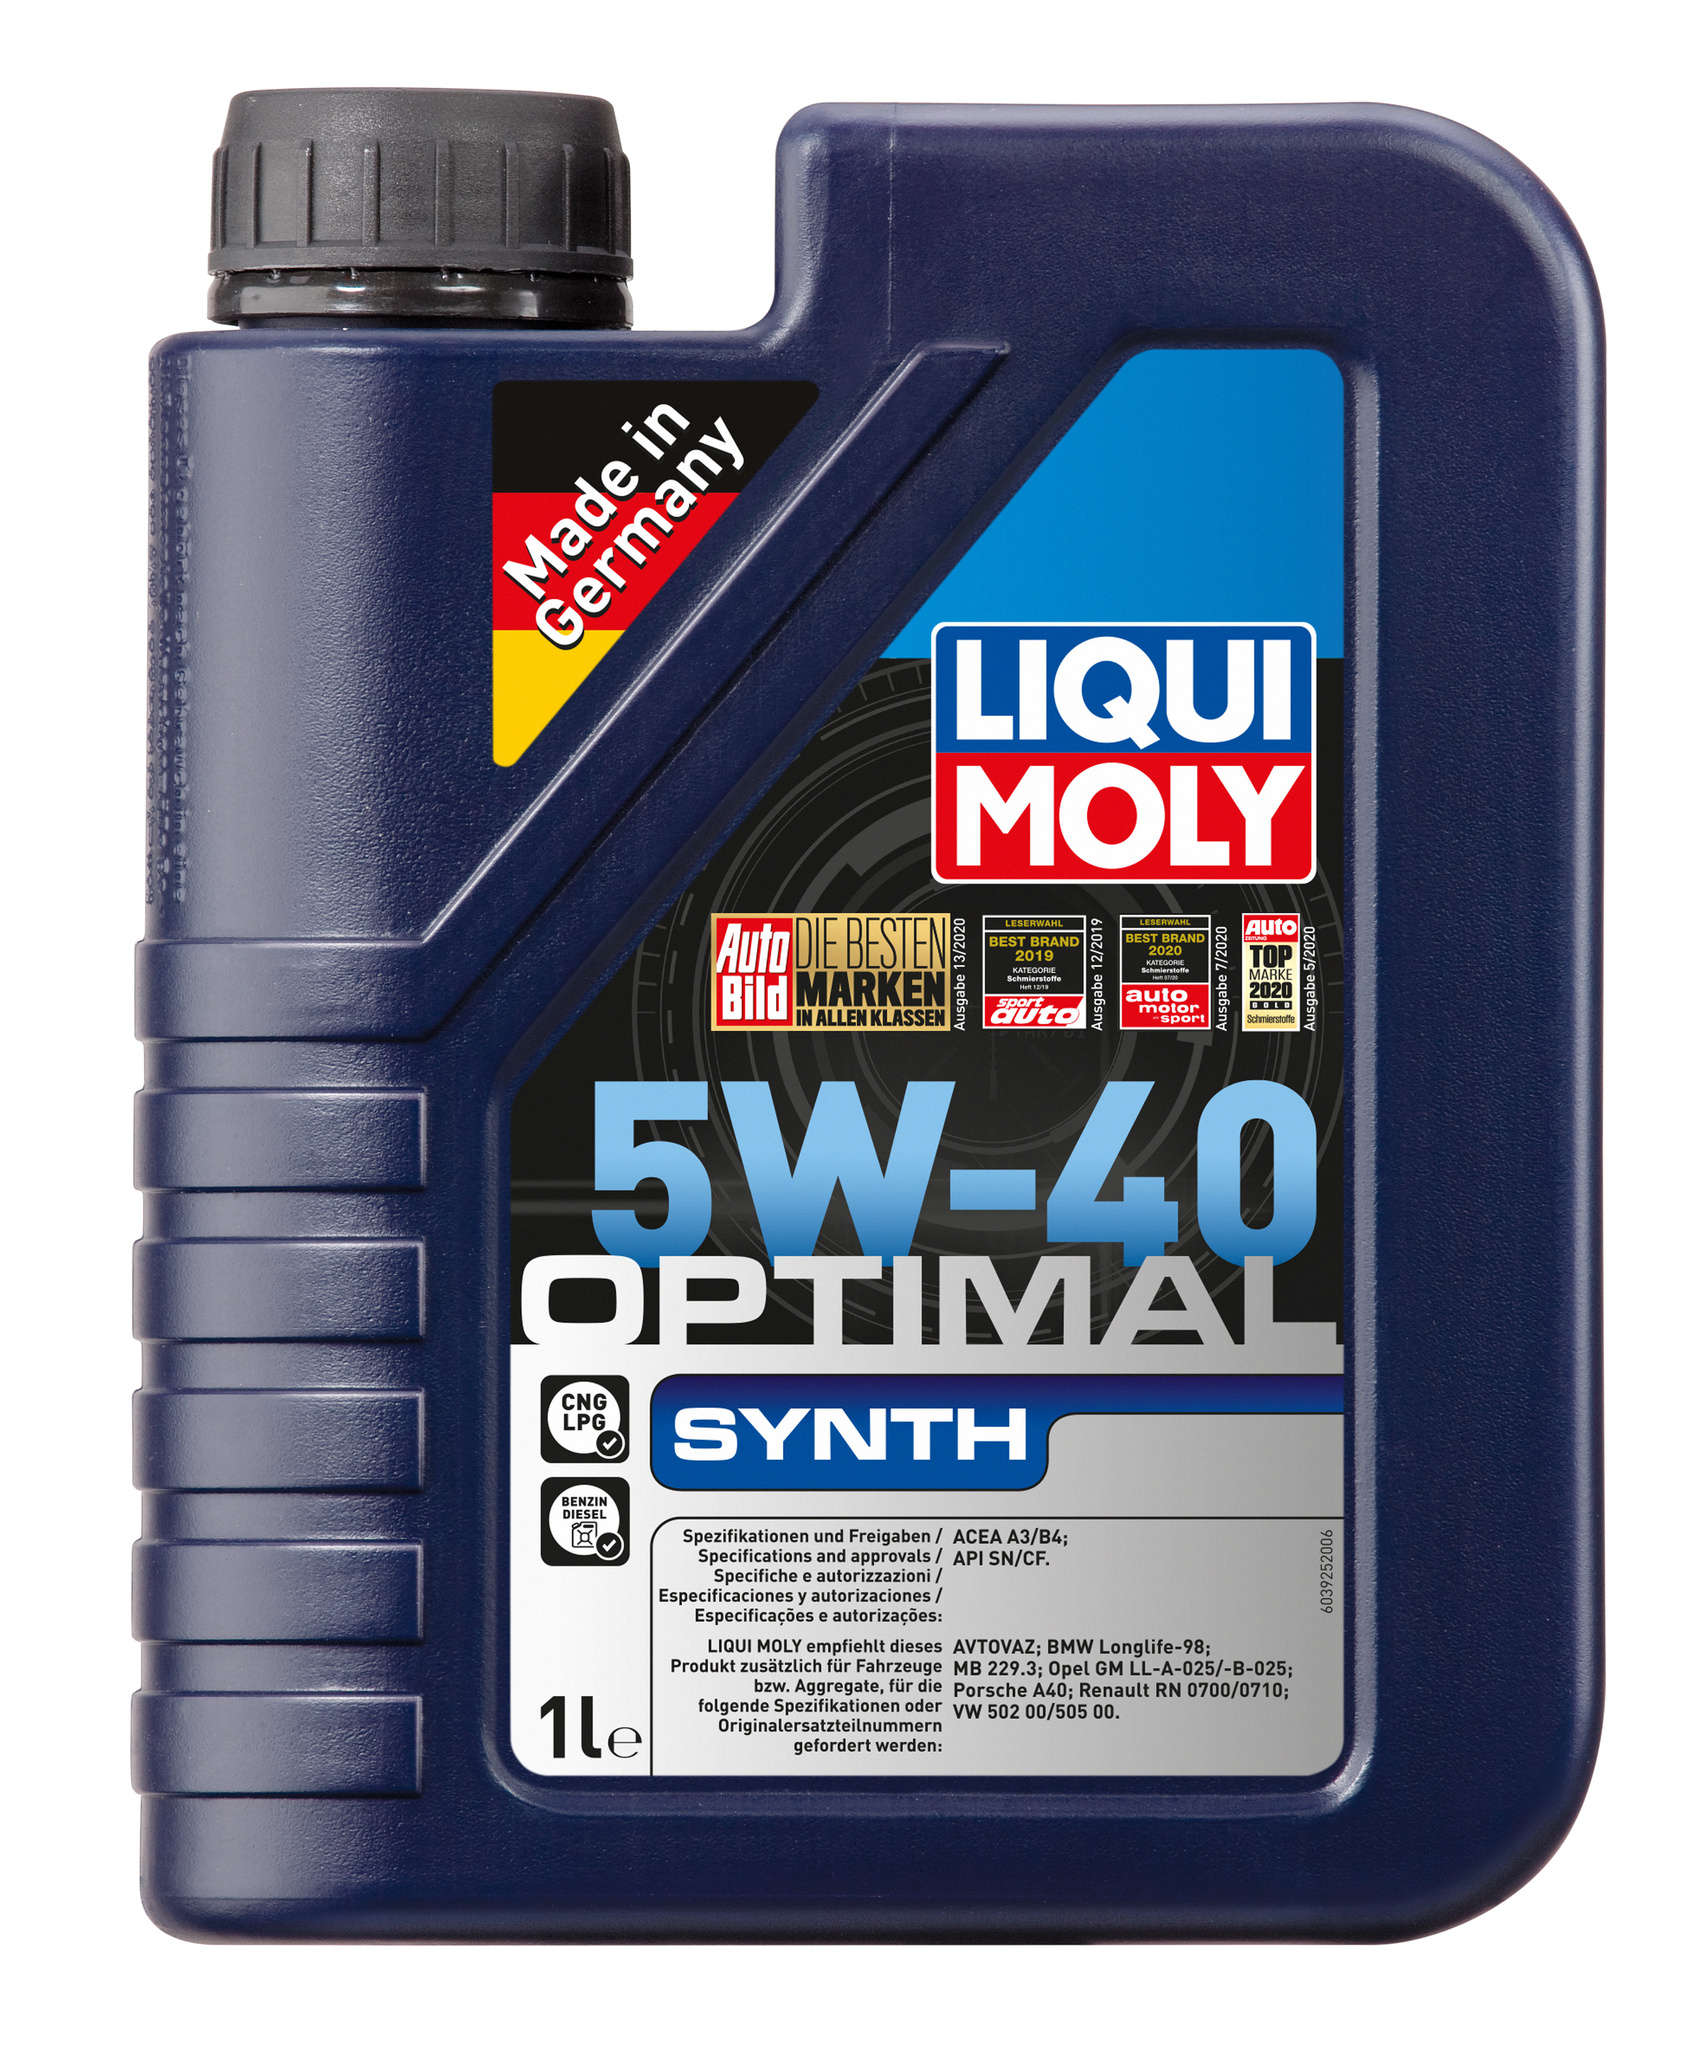 Моторное масло Liqui Moly Optimal Synth 5W40 hc-синтетическое 1л